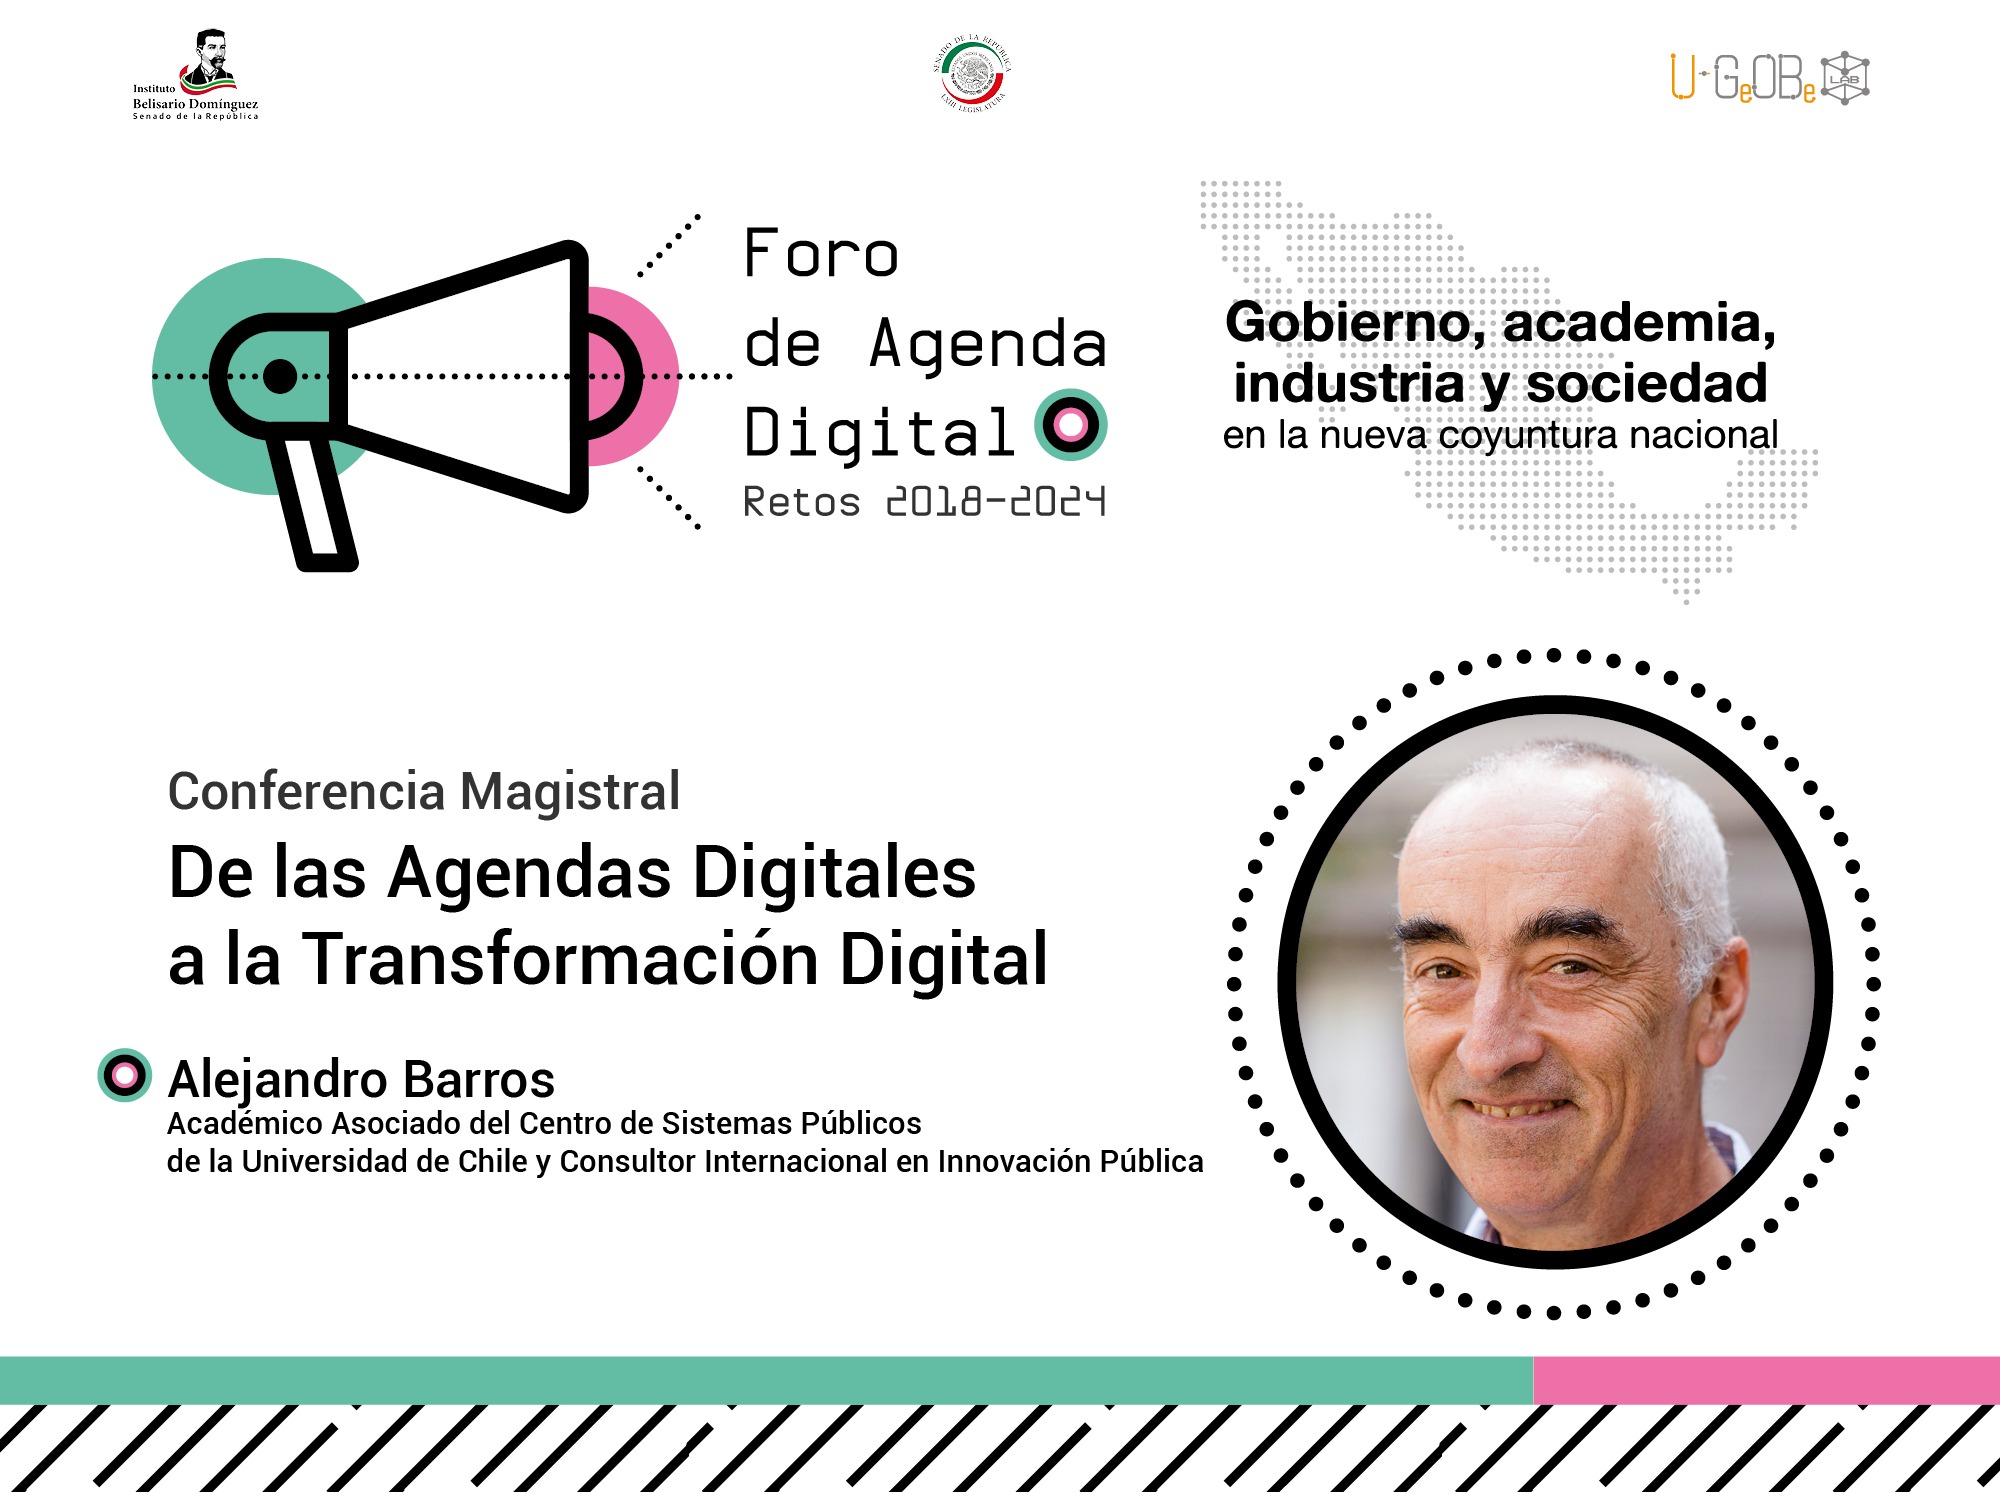 Invitación a Congreso de Agendas Digitales, en México, agosto 2018